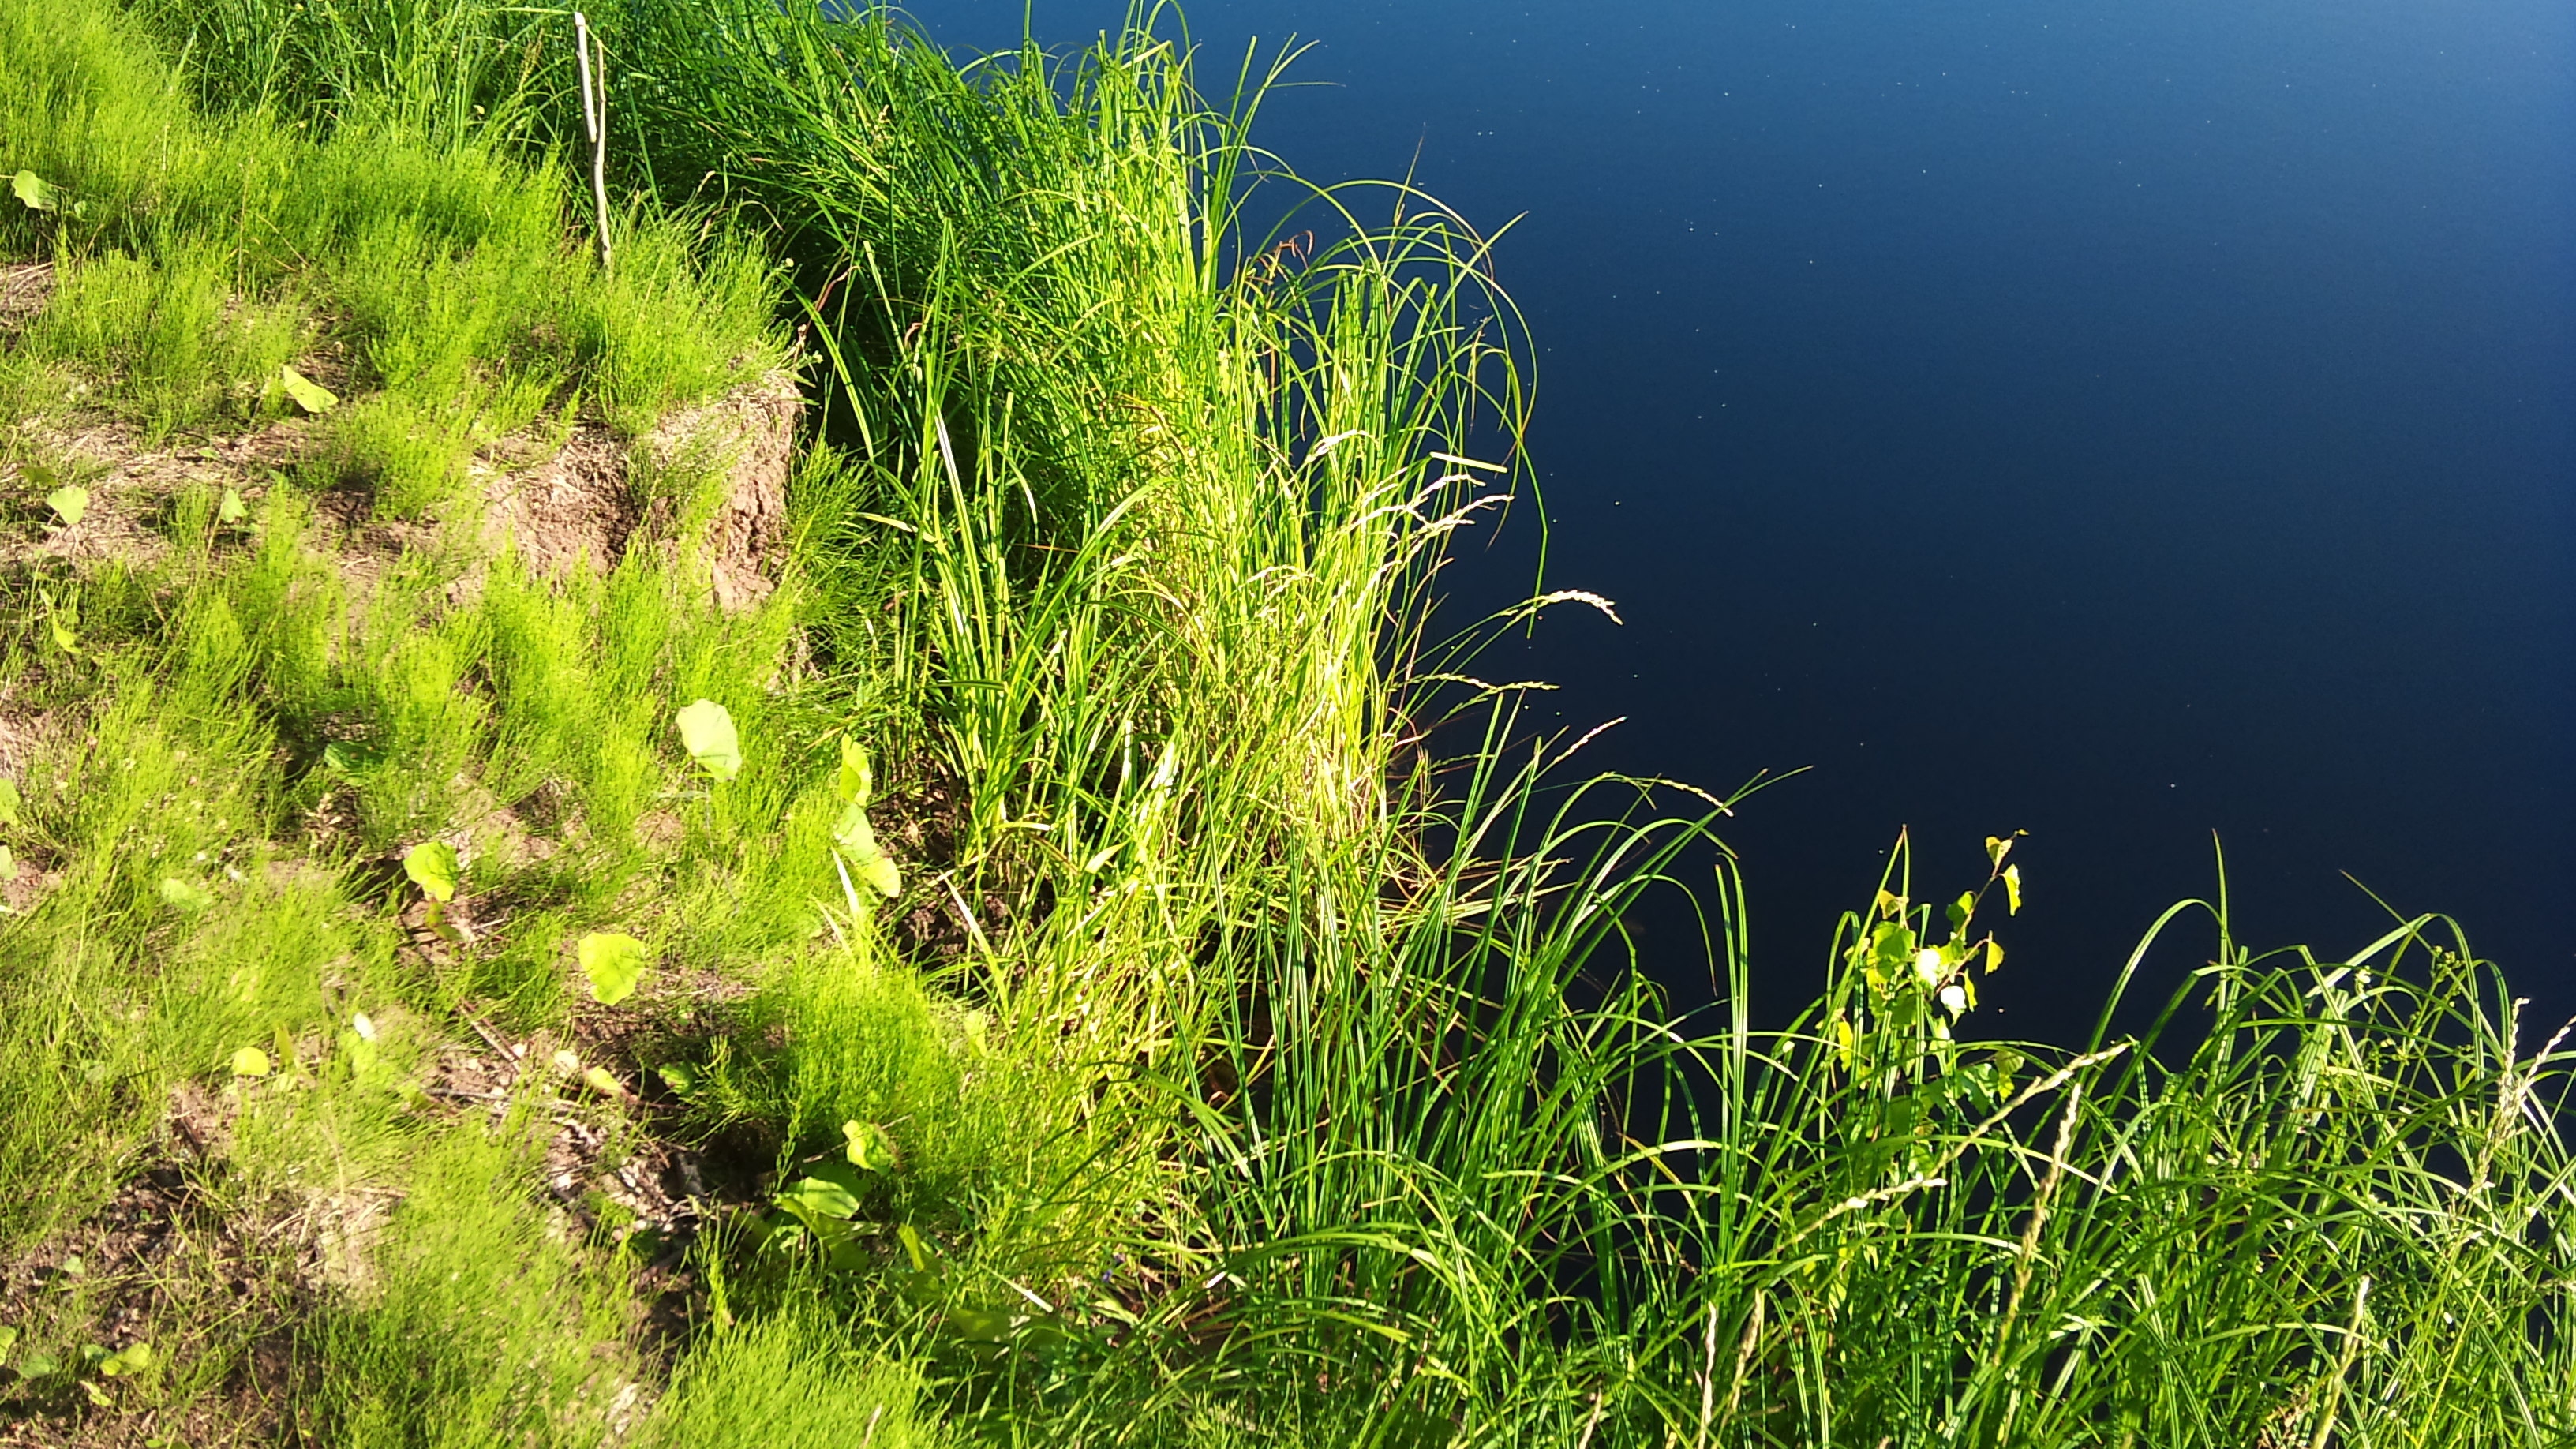 Участка водные поверхности и природный. Прибрежная растительность. Трава на берегу озера. Трава в воде. Прибрежно-водные растения.